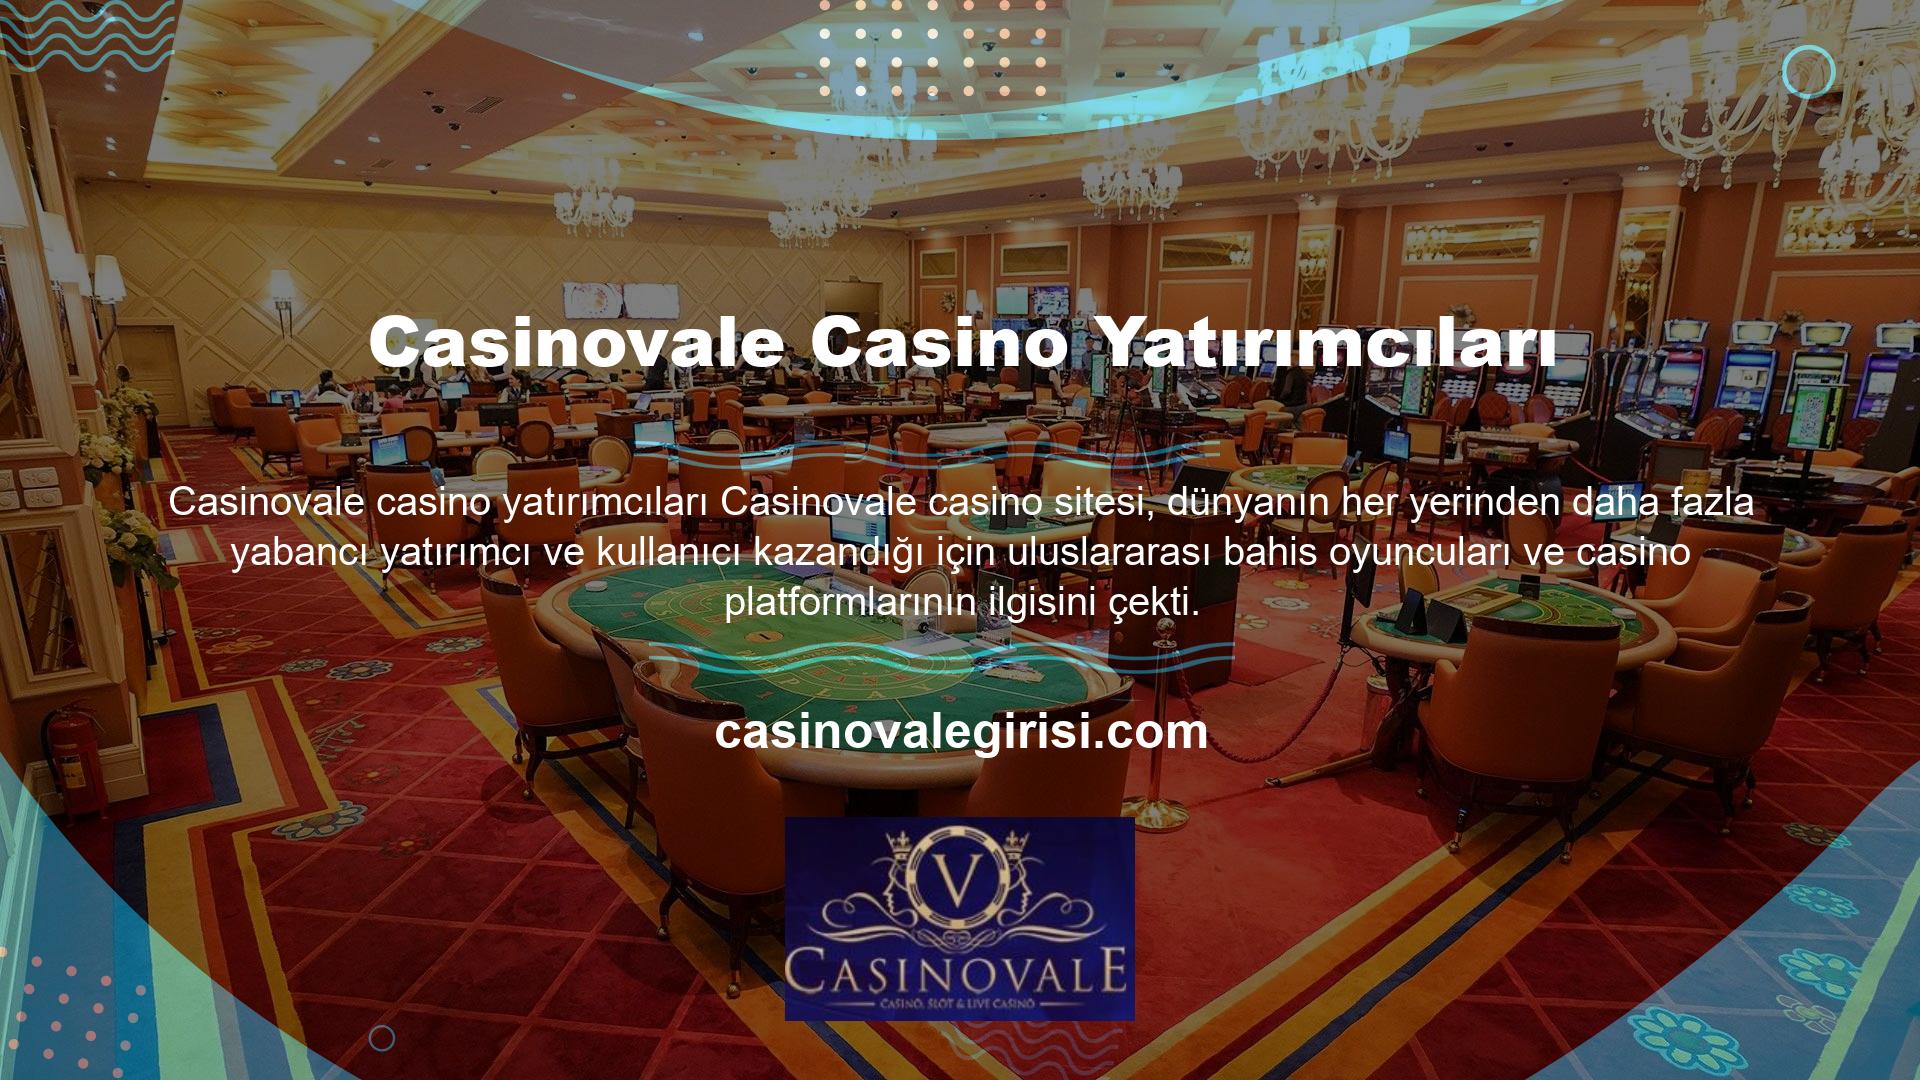 Çok çeşitli Japon yatırımcıların bulunduğu bu casino sitesi daha fazlasını çekecek ve fahiş karlar üretecek